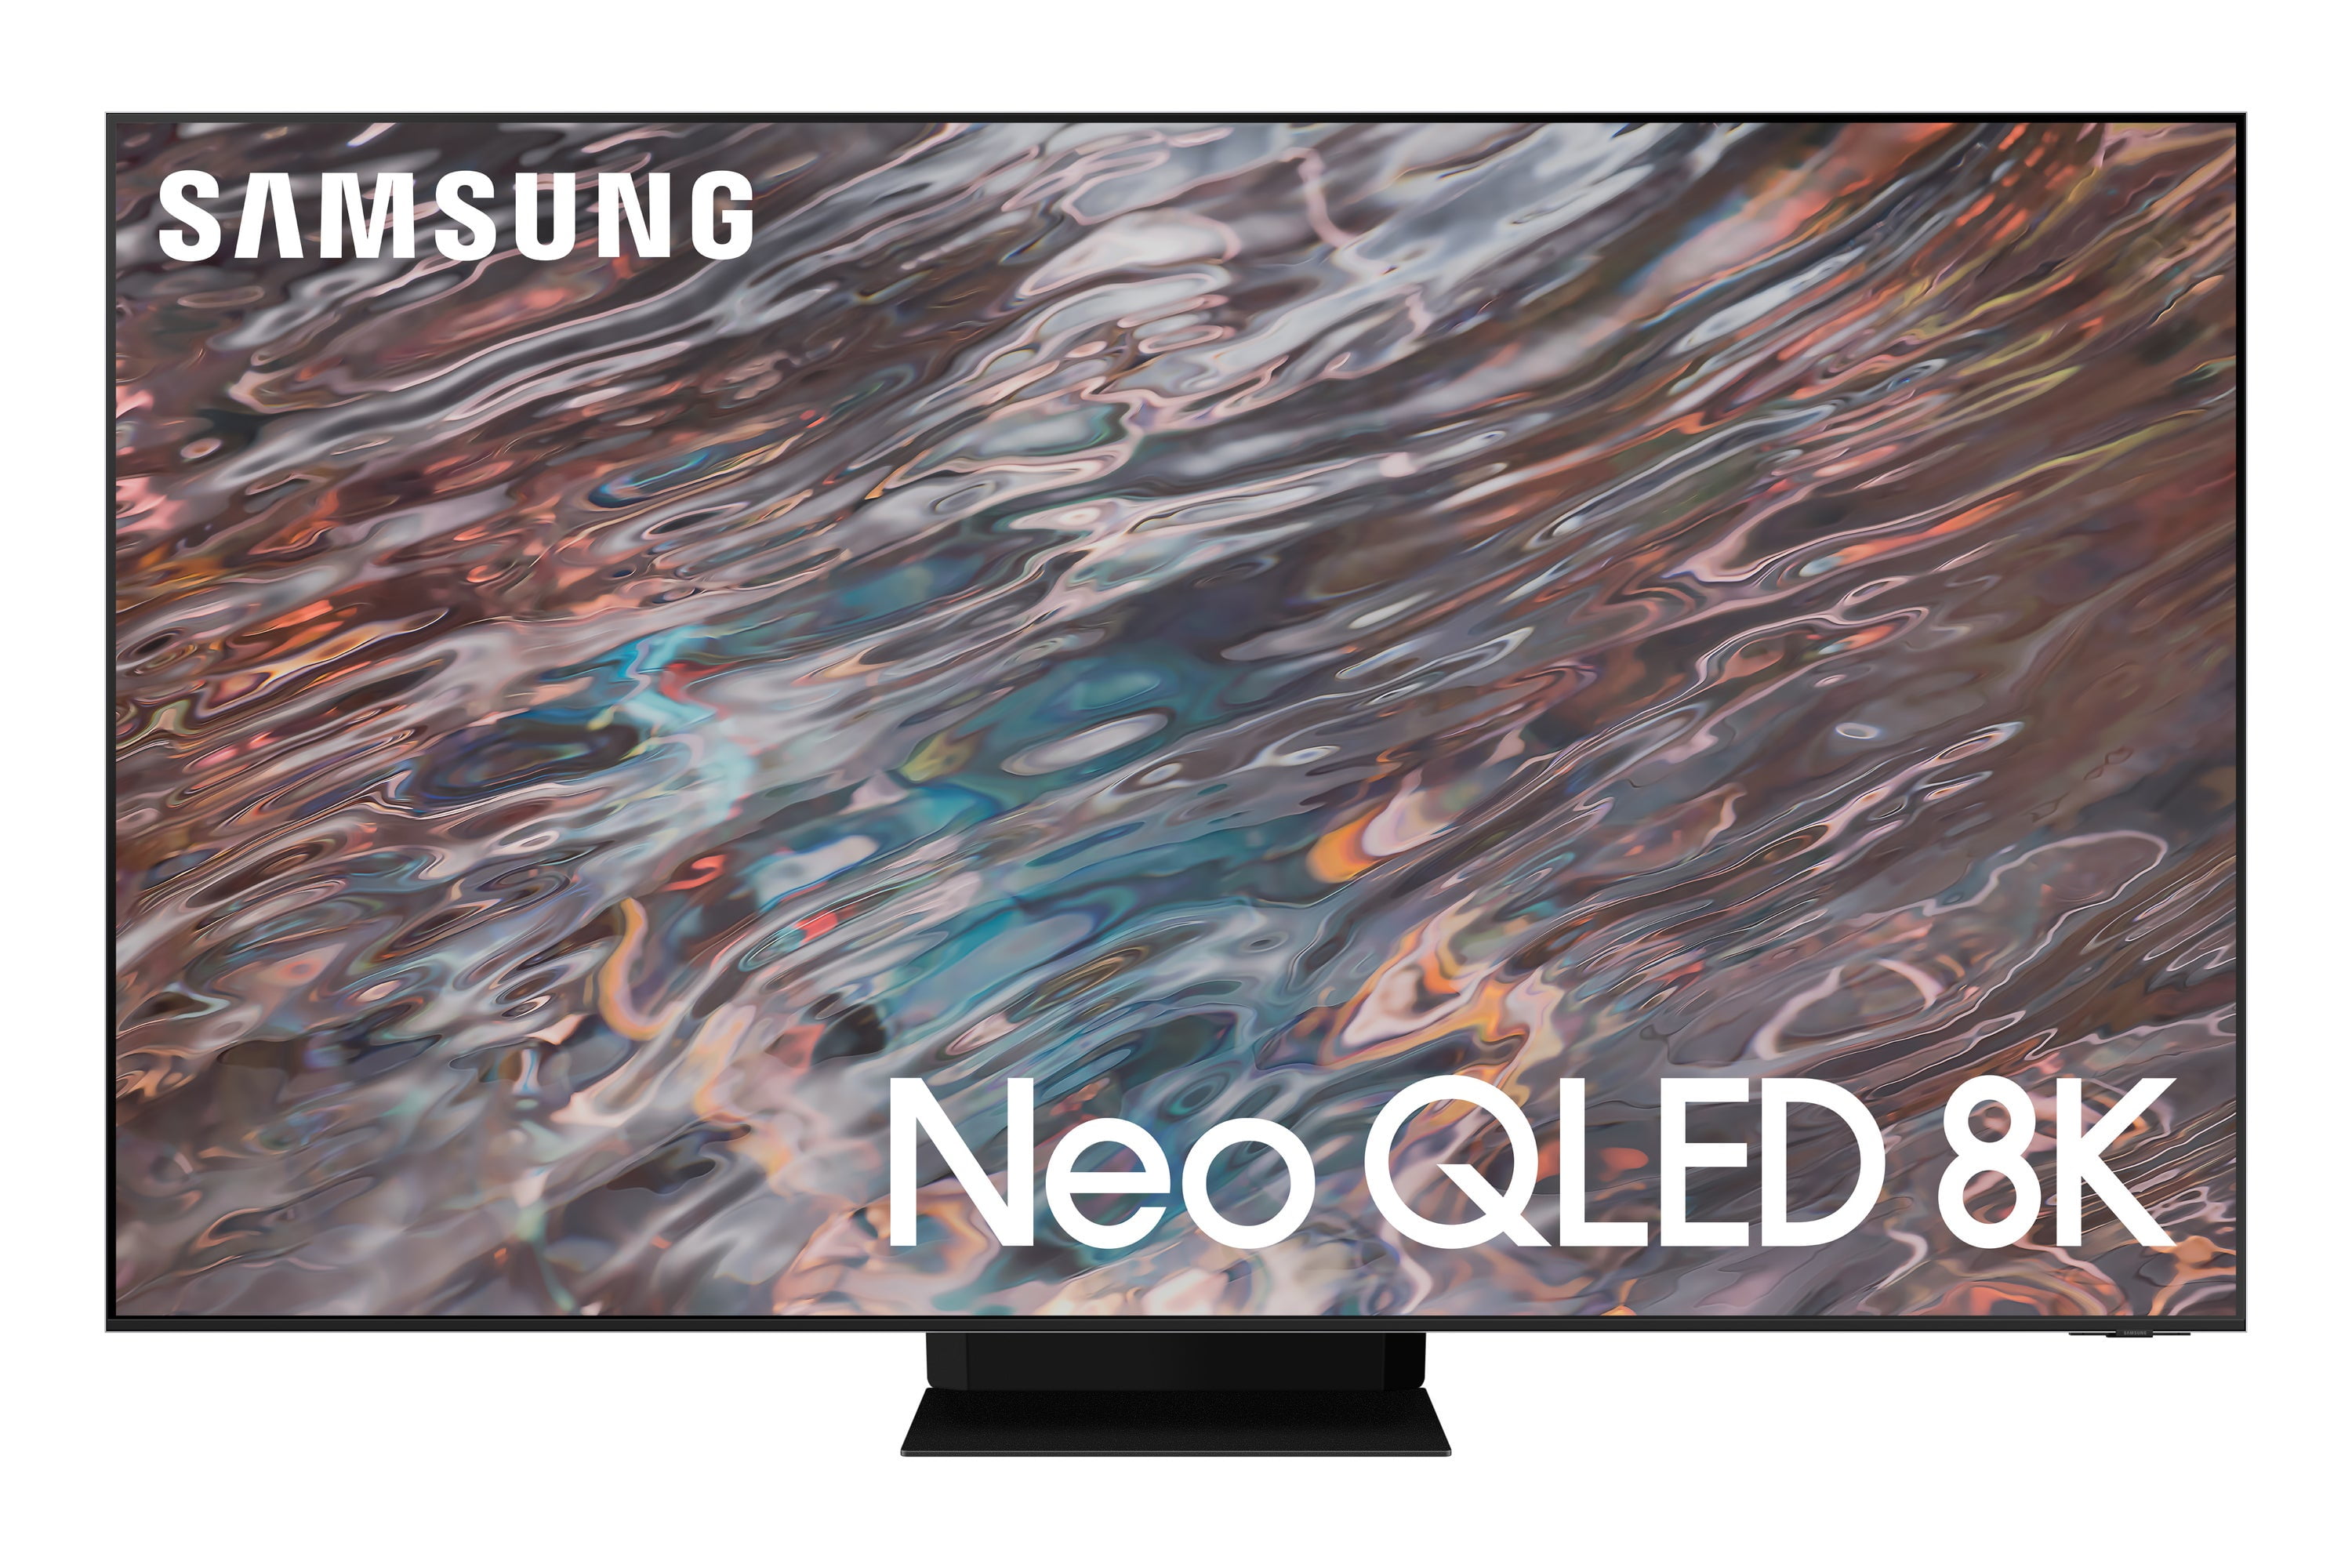 SAMSUNG 65" Class Neo QLED 8K (4320P) LED Smart TV QN65QN800 2021